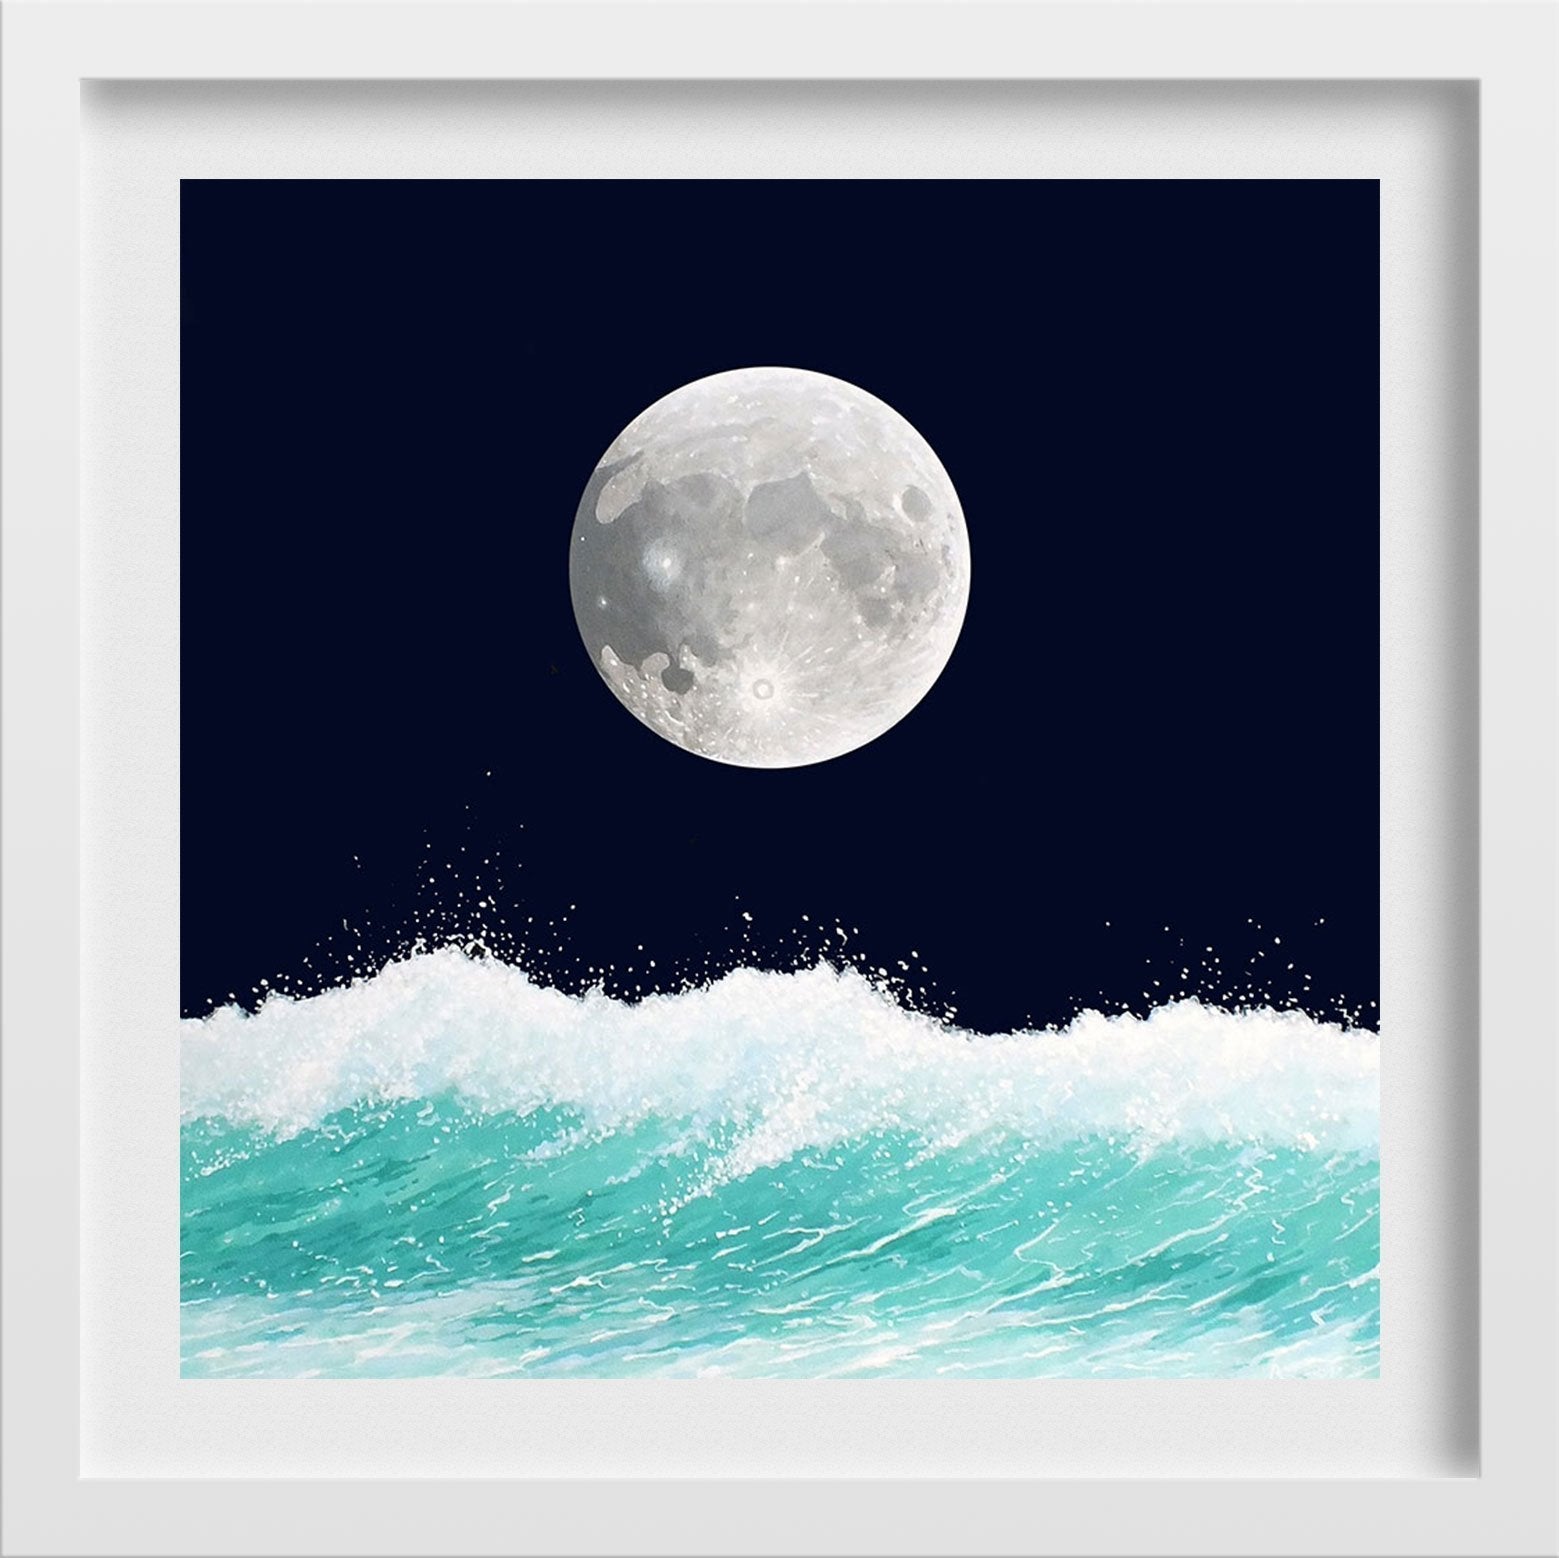 Sea And Moon Painting - Meri Deewar - MeriDeewar